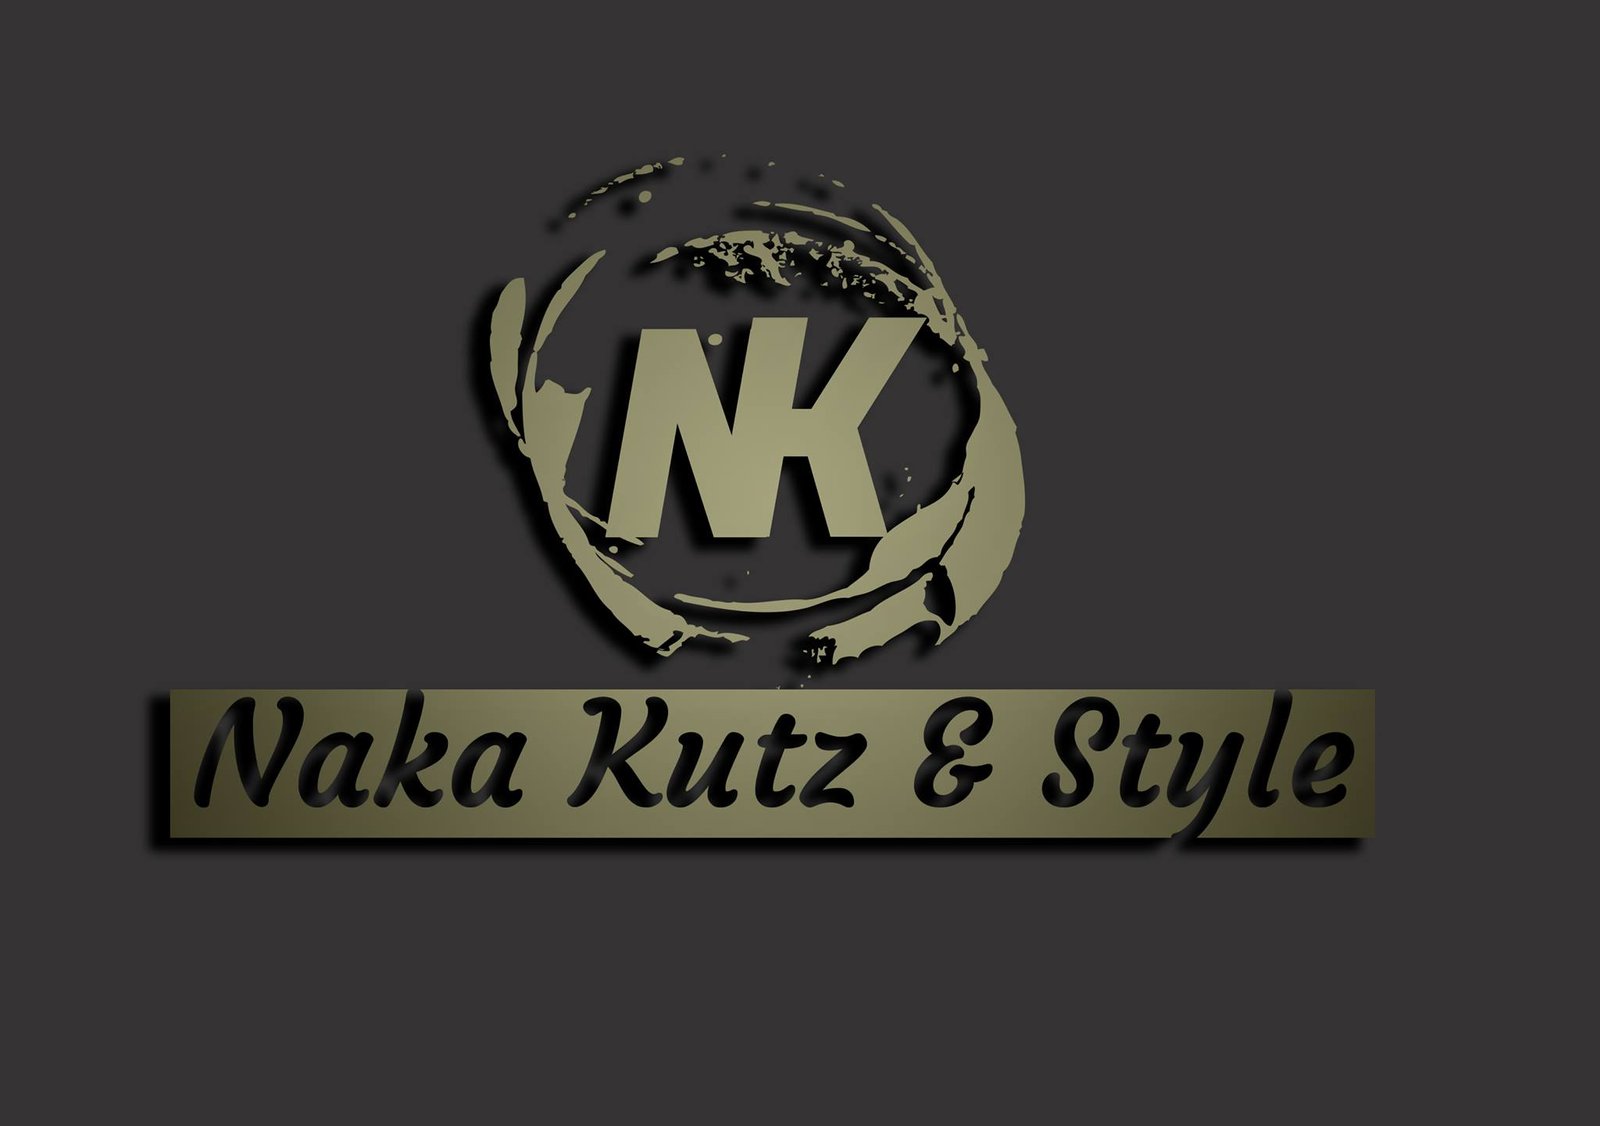 Naka Kutz